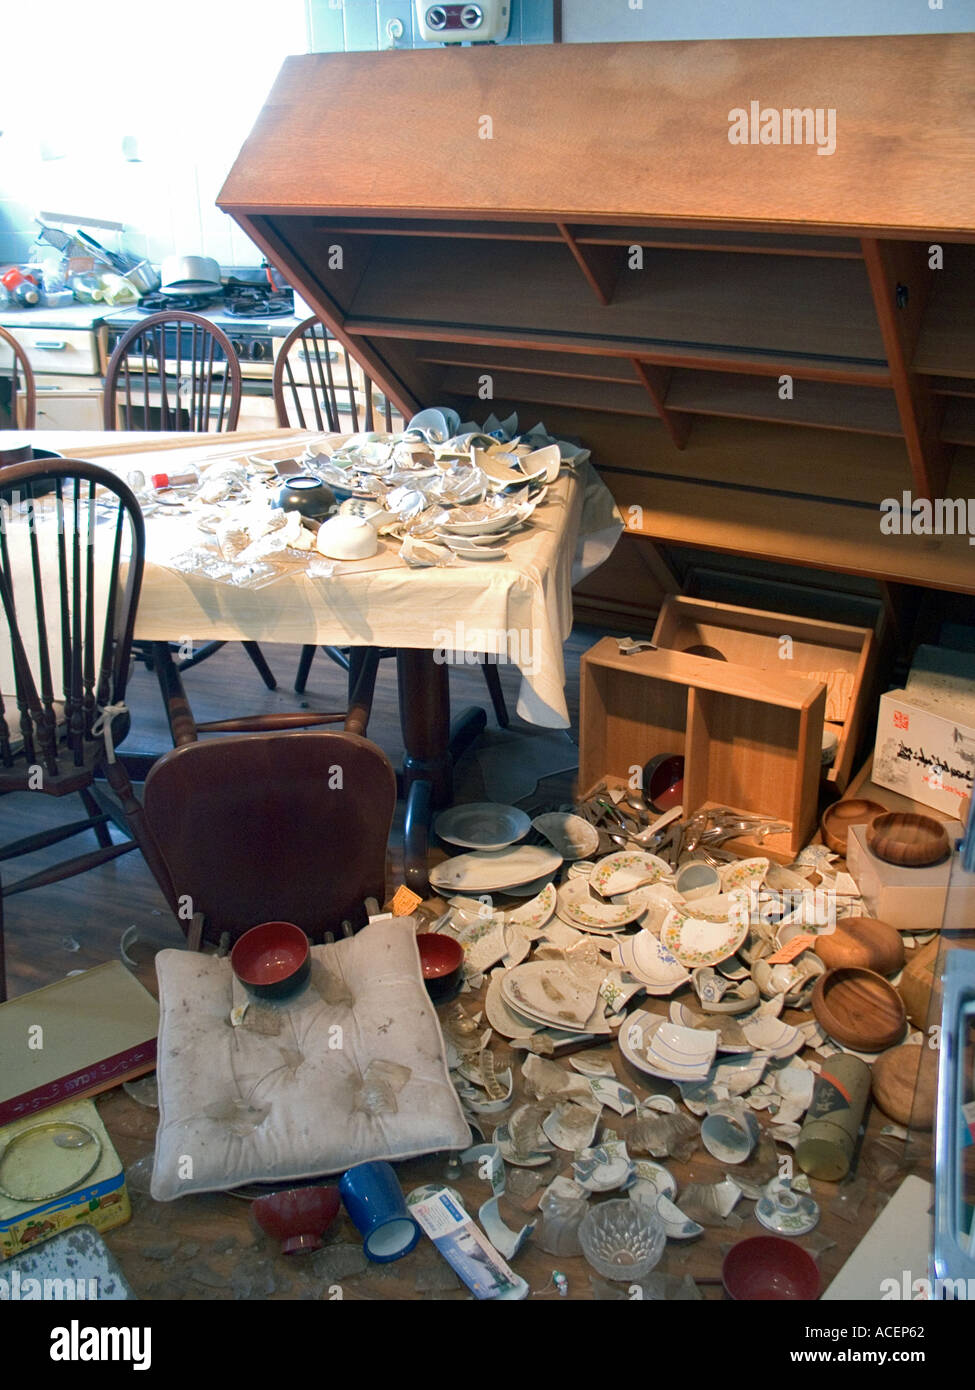 Daños a una cocina residencial desde el Gran Terremoto de Hanshin de 1995 en y alrededor de Kobe, Japón Foto de stock